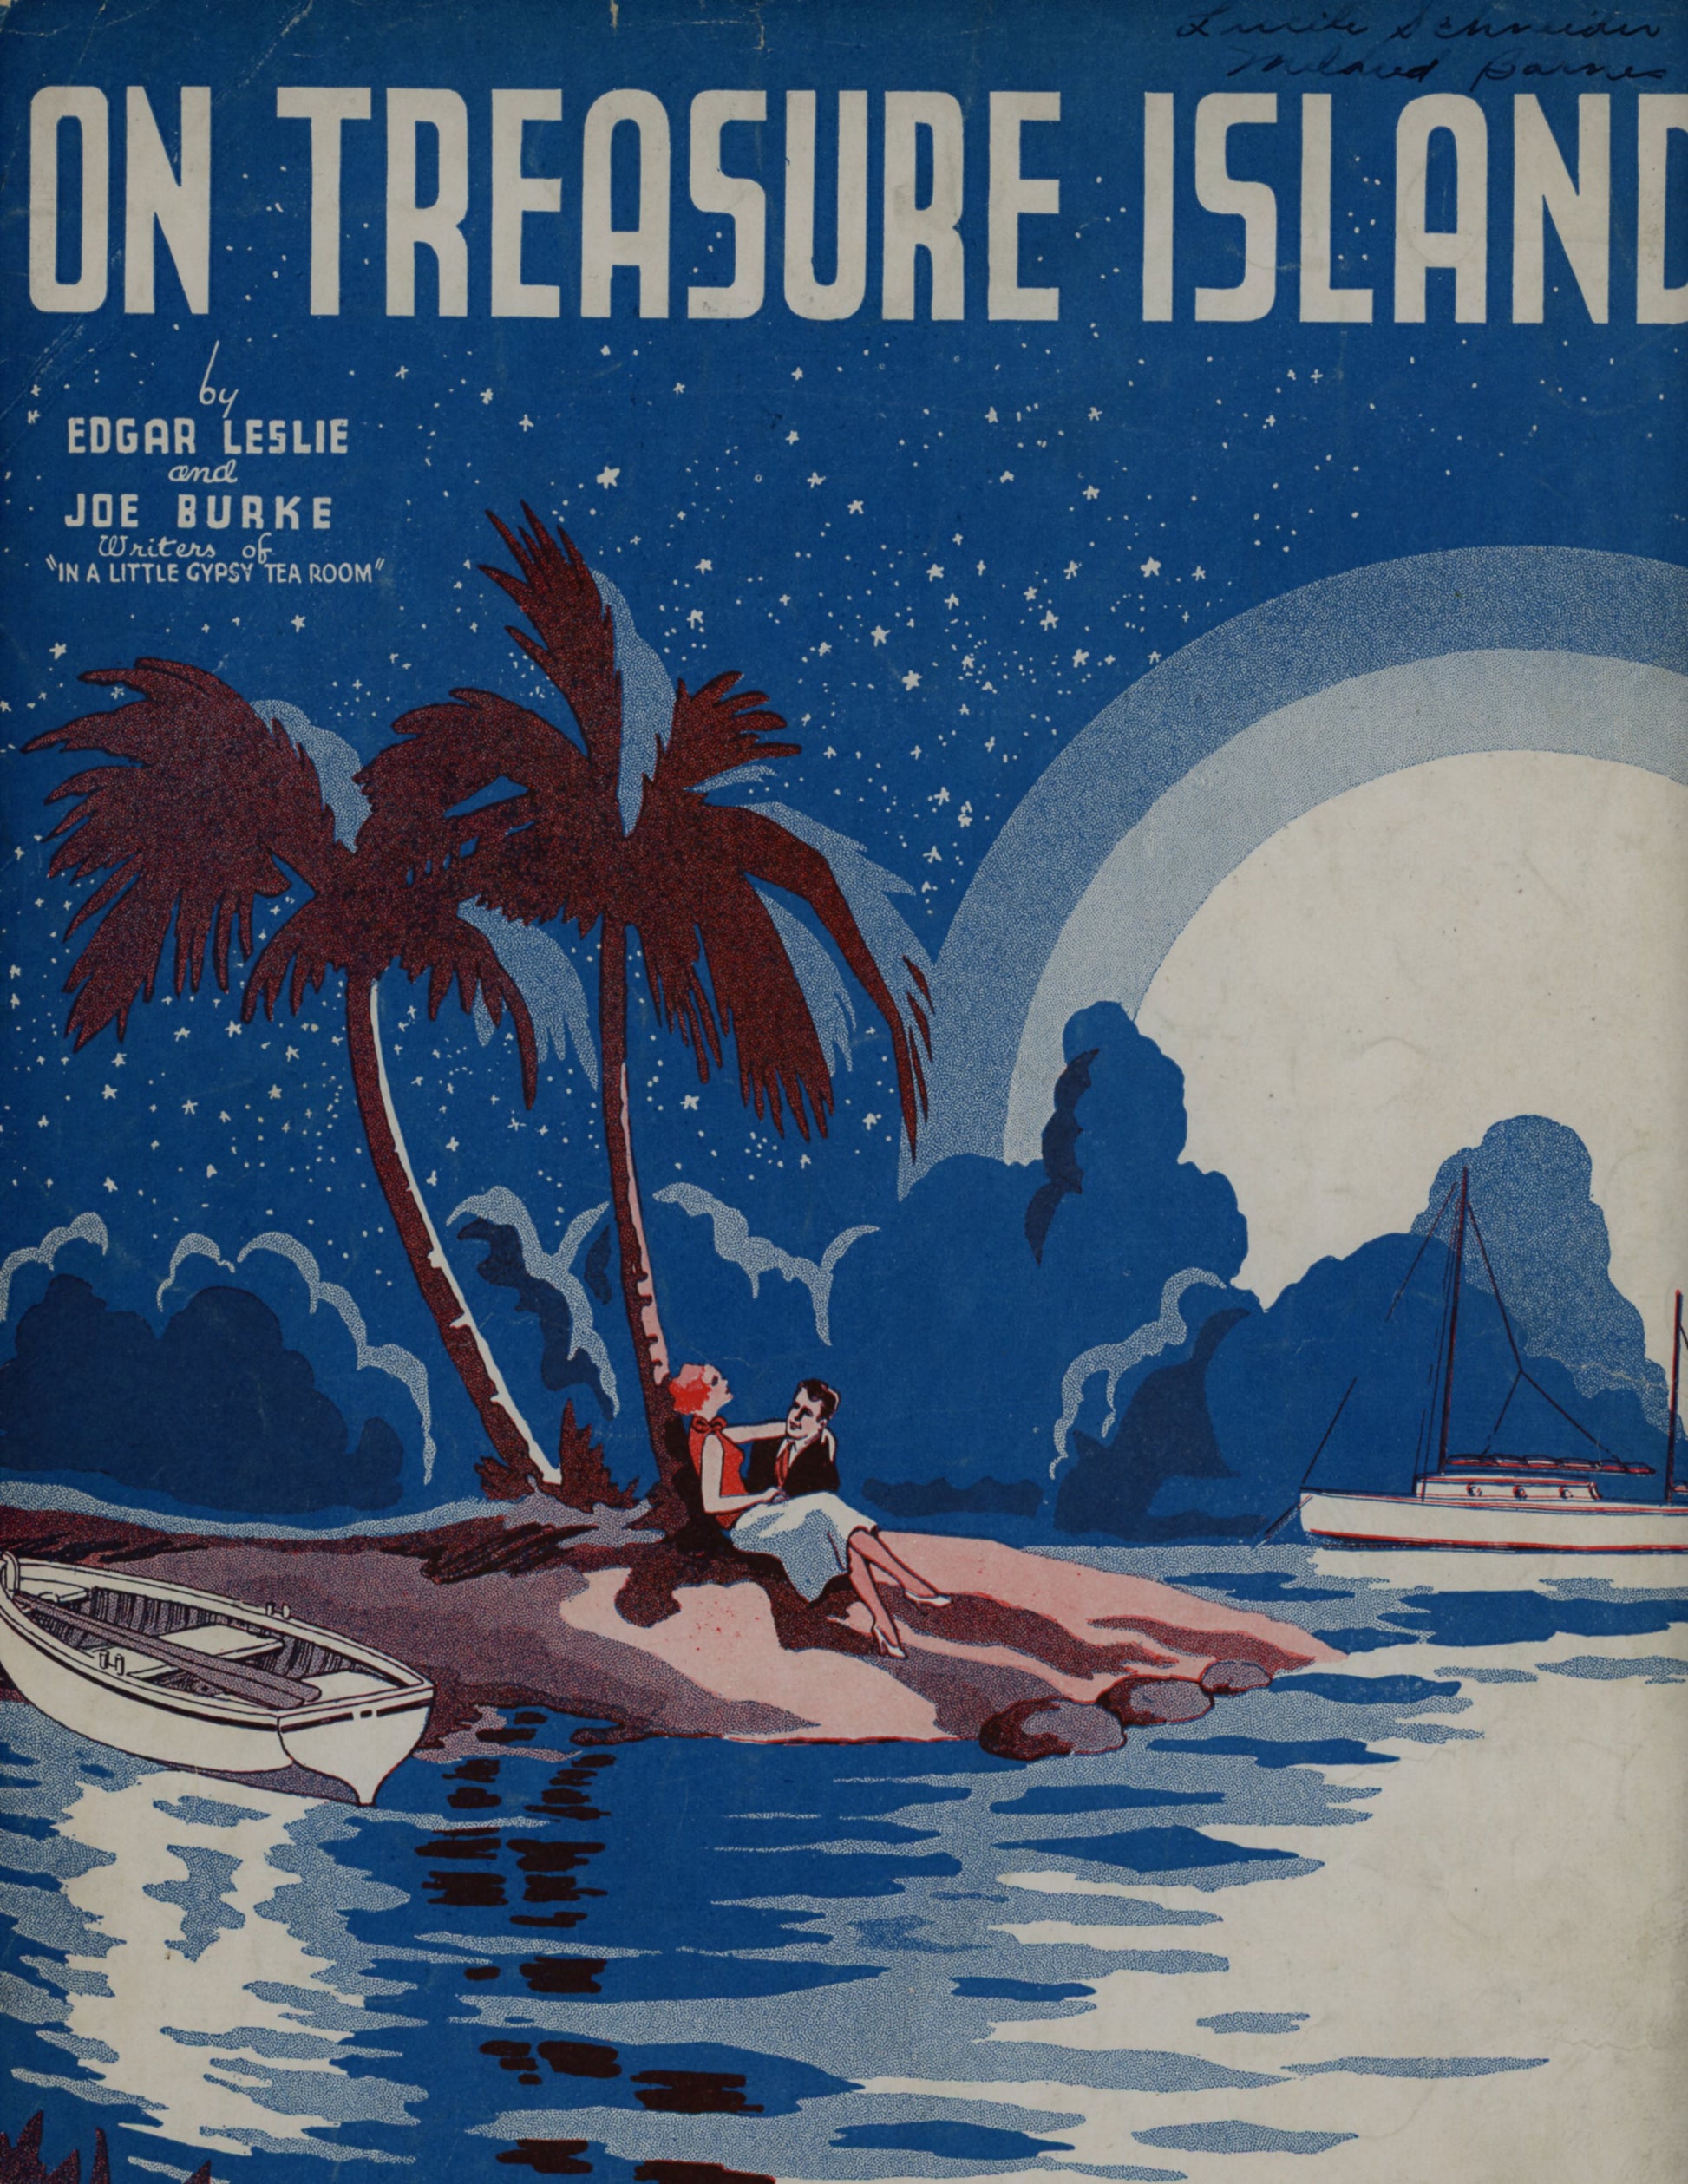 ON TREASURE ISLAND by Edgar Leslie & Joe Burke Score & Lyrics Sheet Music ©1938